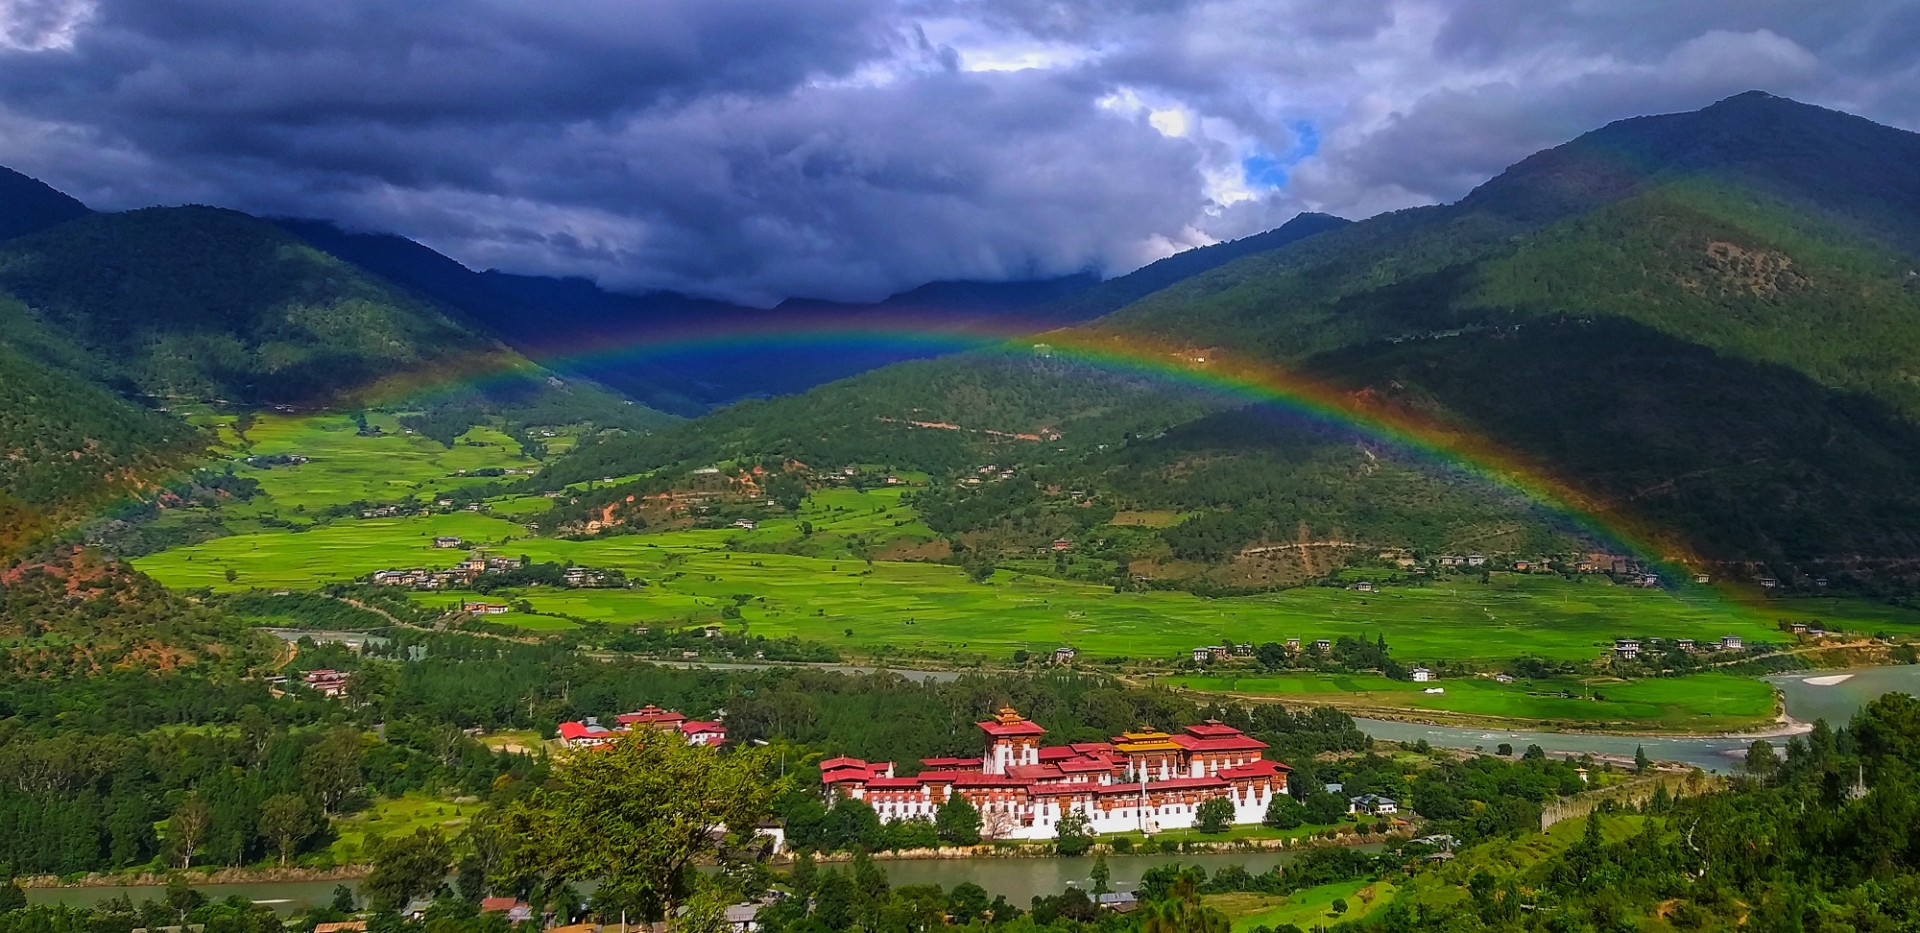 2/3 đất nước Bhutan được bao phủ bởi rừng núi.